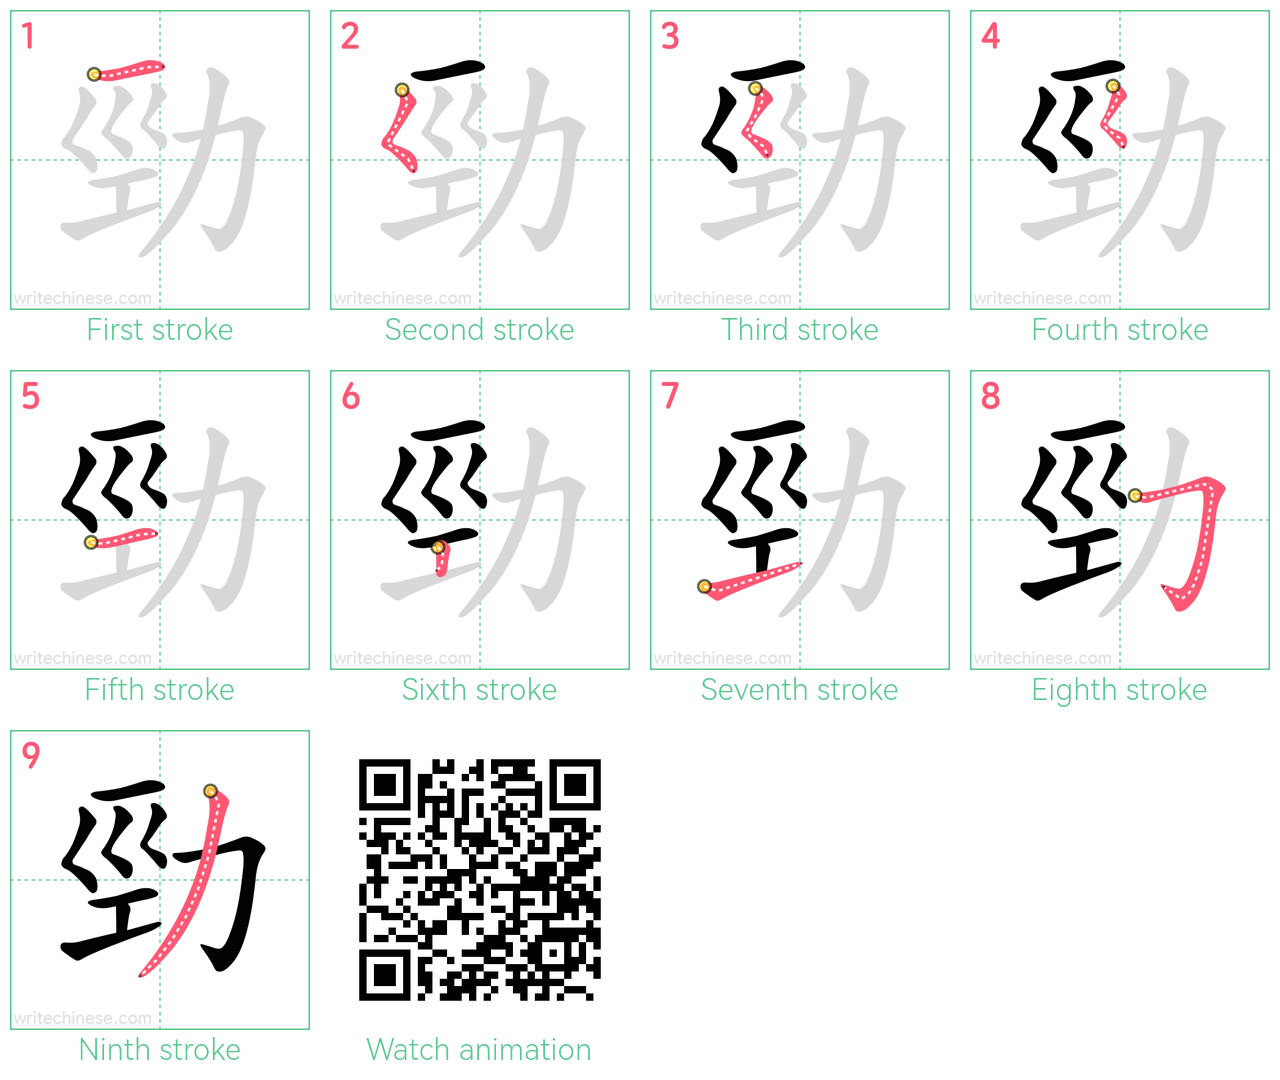 勁 step-by-step stroke order diagrams